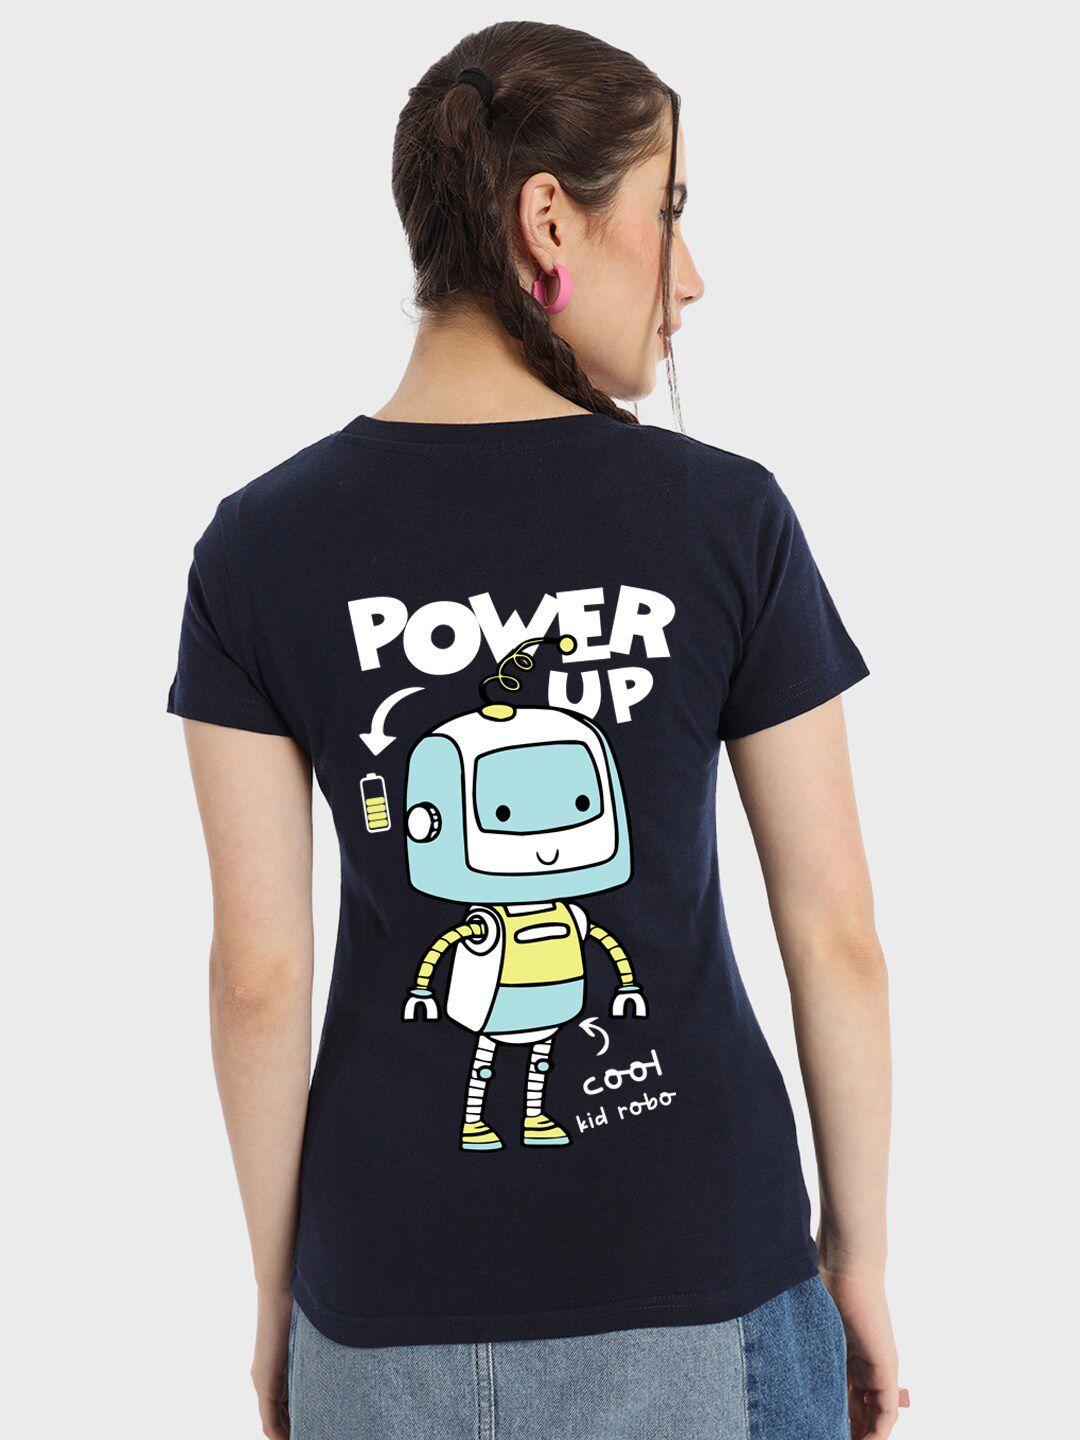 bewakoof-power-up-graphic-printed-cotton-t-shirt